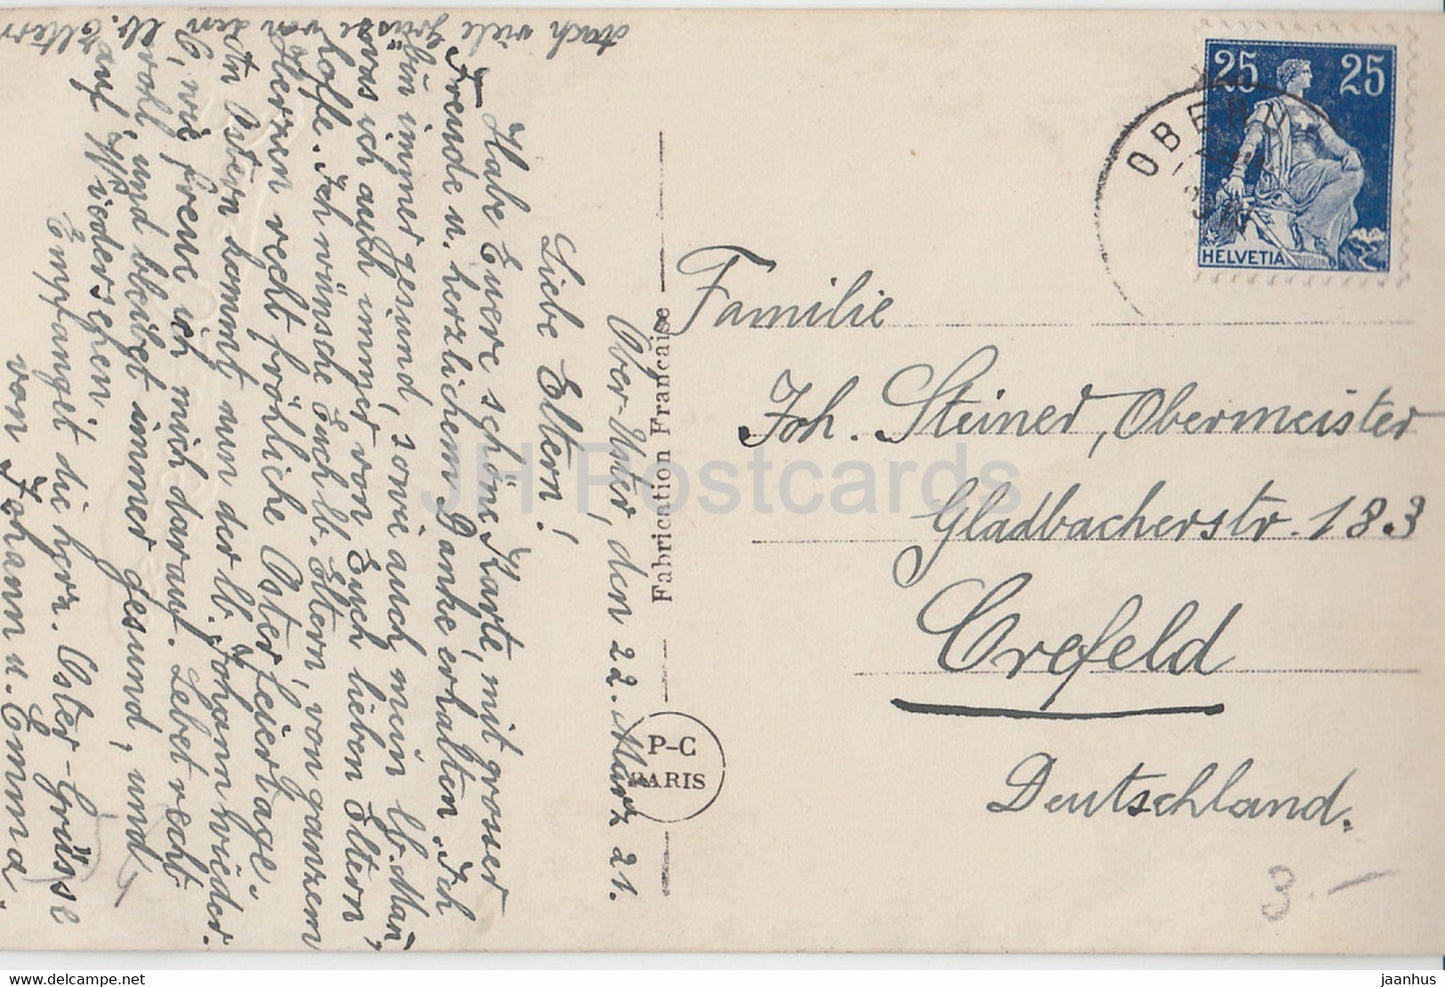 Ostergrußkarte - Beste Osterngrusse - Mädchen - Huhn - PC Paris 385 - alte Postkarte - 1921 - Frankreich - gebraucht